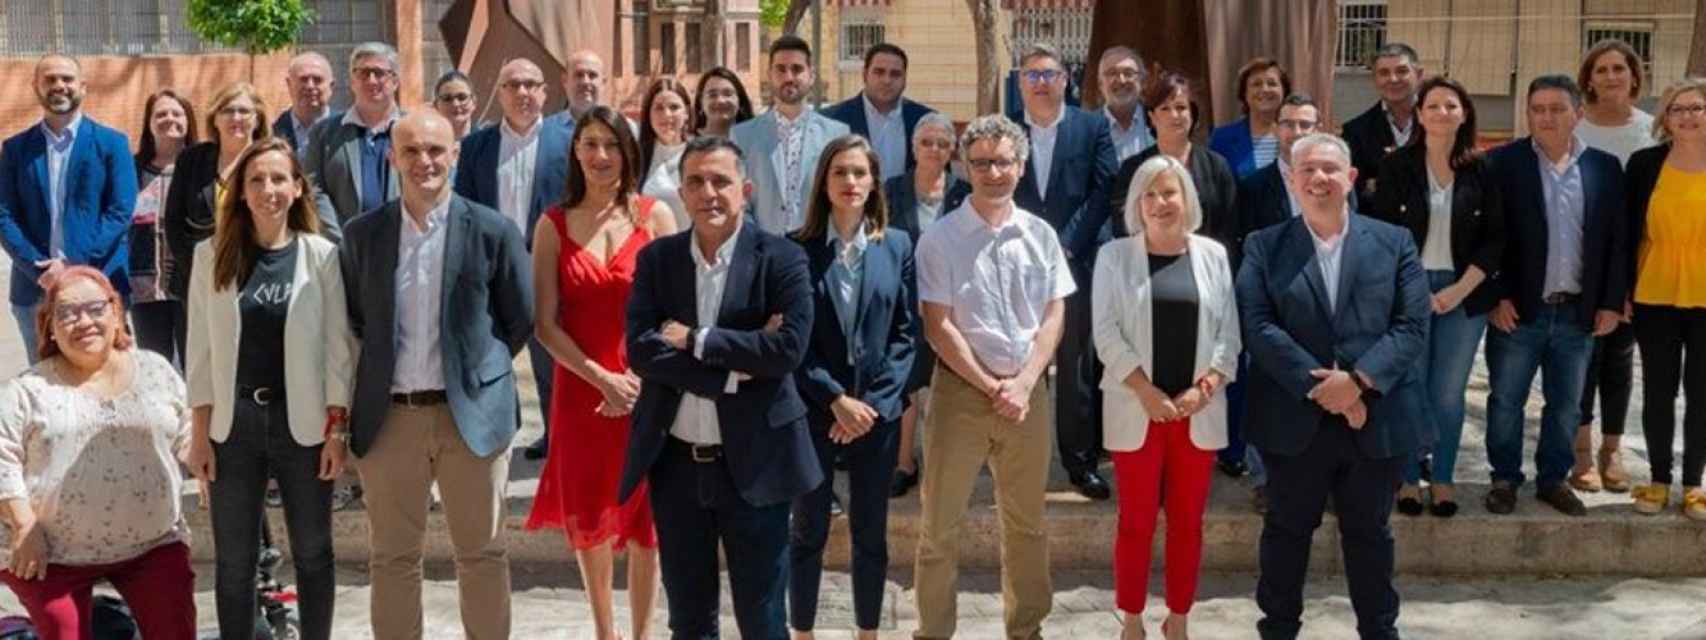 José Antonio Serrano (c) posando con los miembros del PSOE en Murcia.